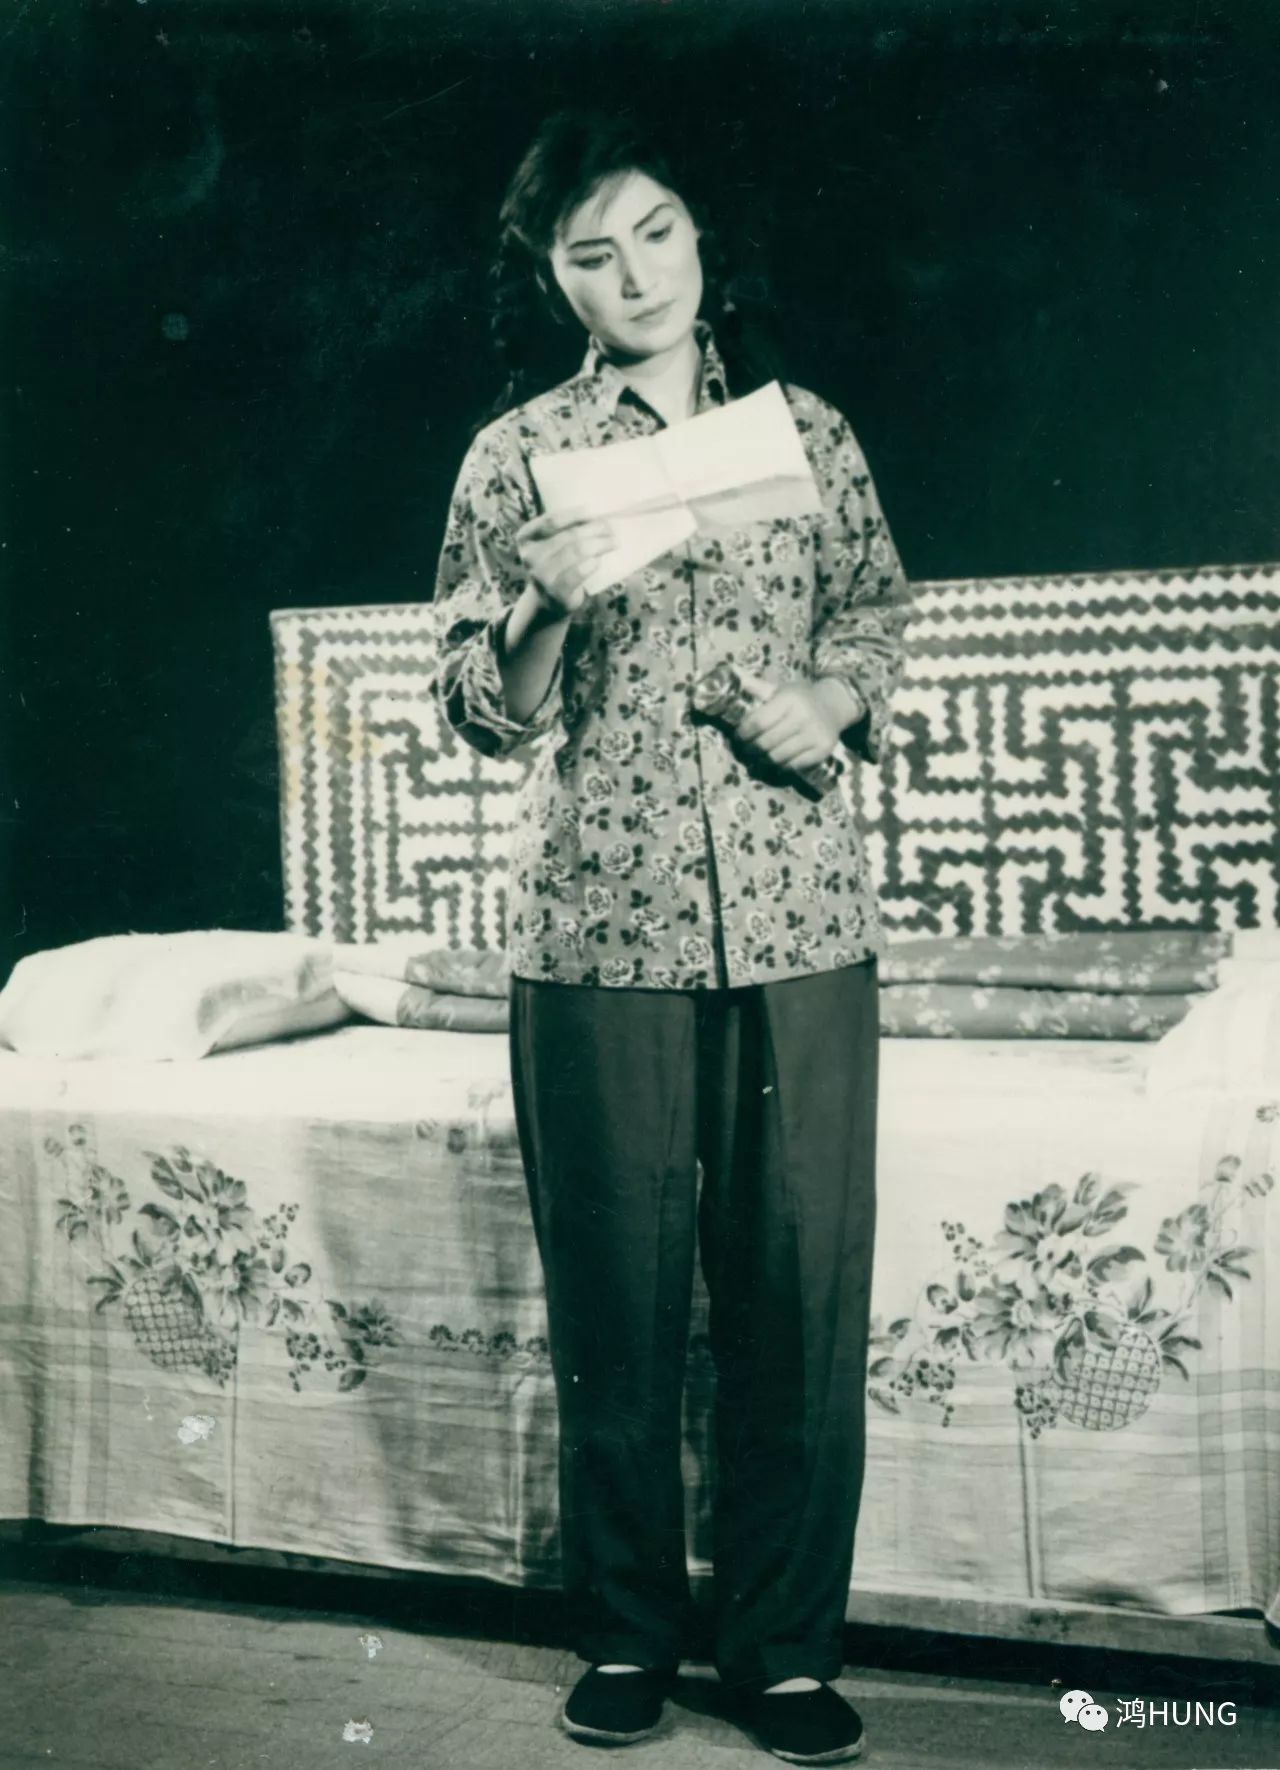 情深意长 《朝阳沟》第一代银环 1958年,河南豫剧院三团暂时住在郑州